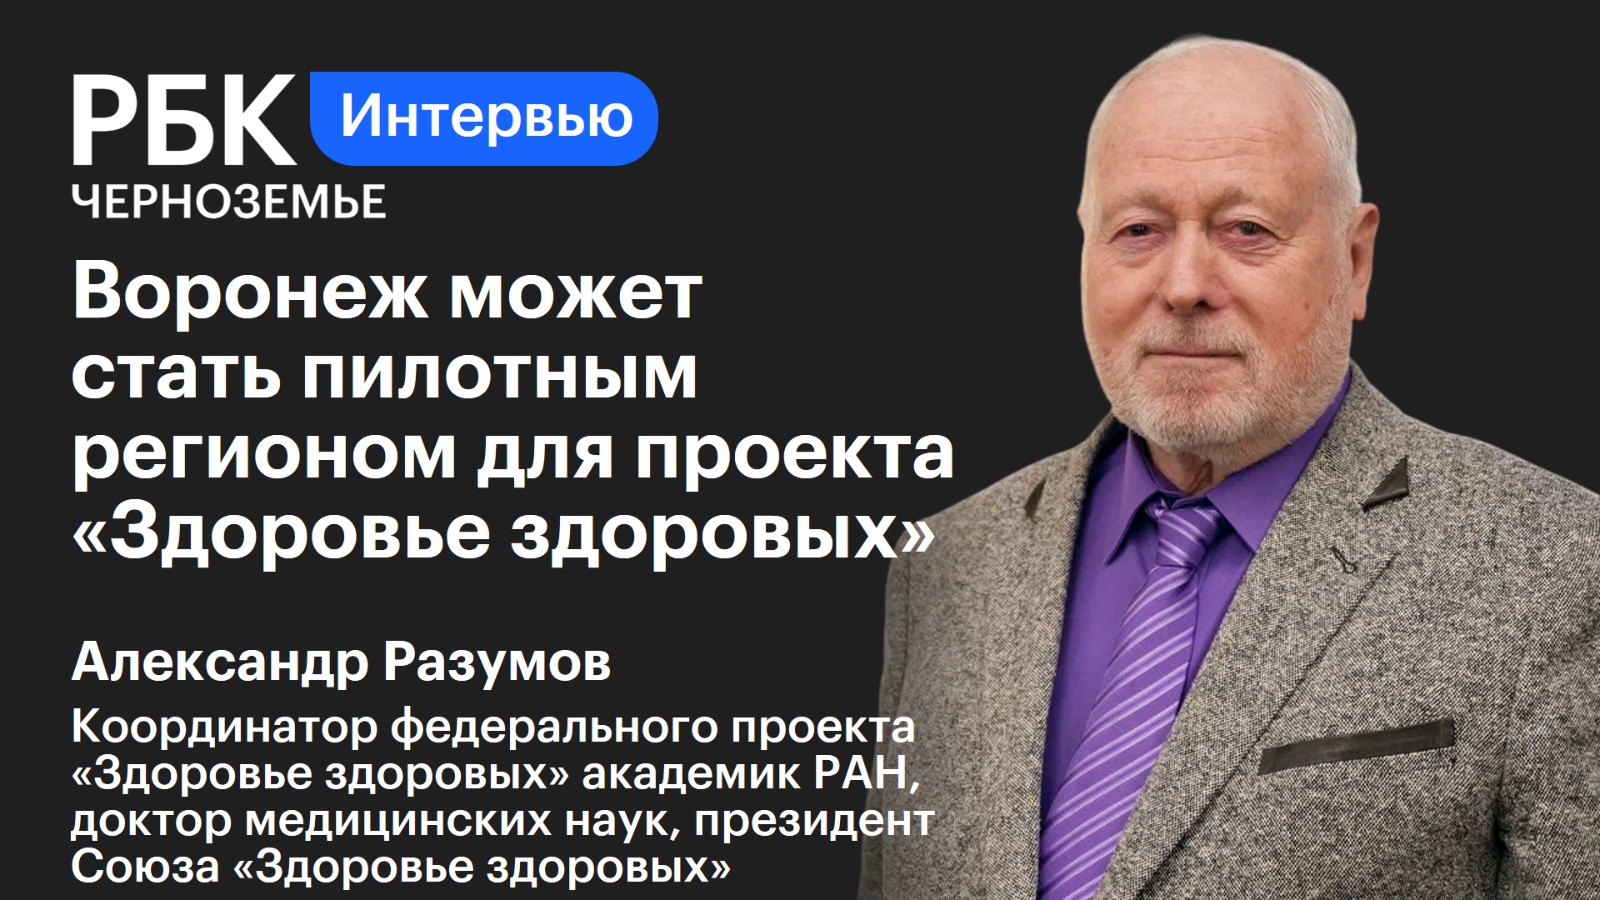 Александр Разумов: «Воронеж может стать пилотным регионом для проекта «Здоровье здоровых»